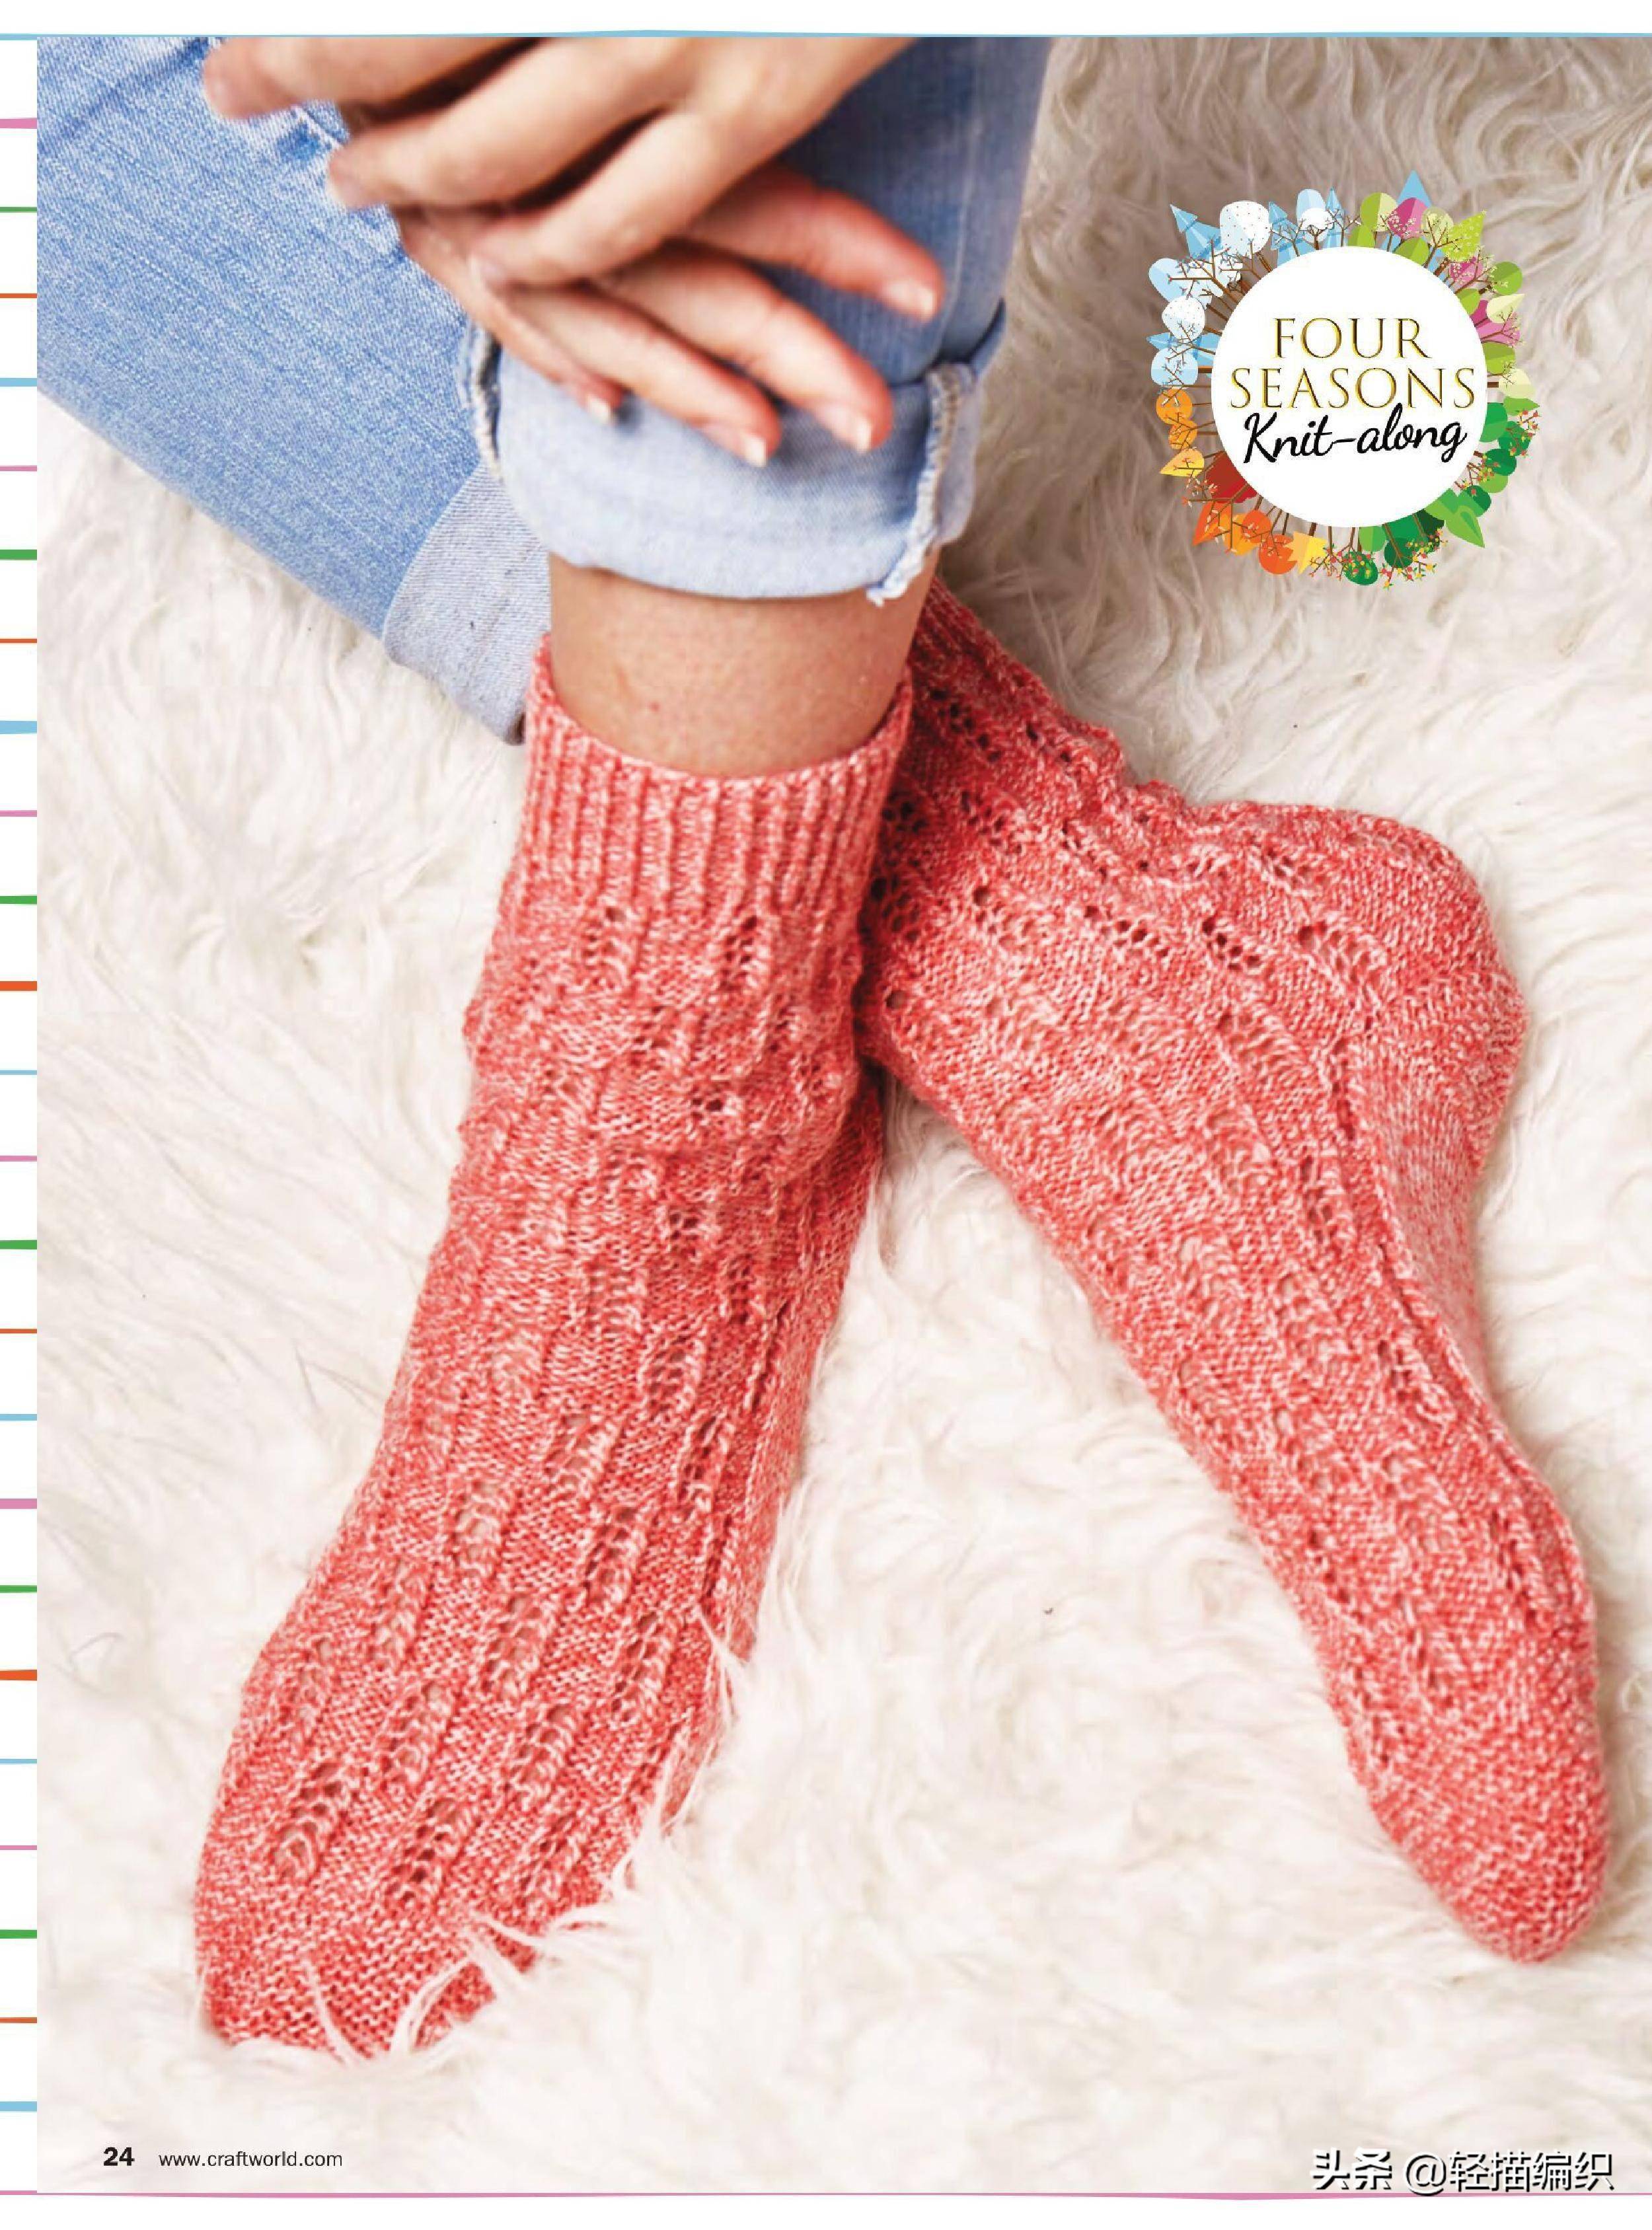 袜子,靠枕和壁挂,单色或配色编织,花样简洁,漂亮实用